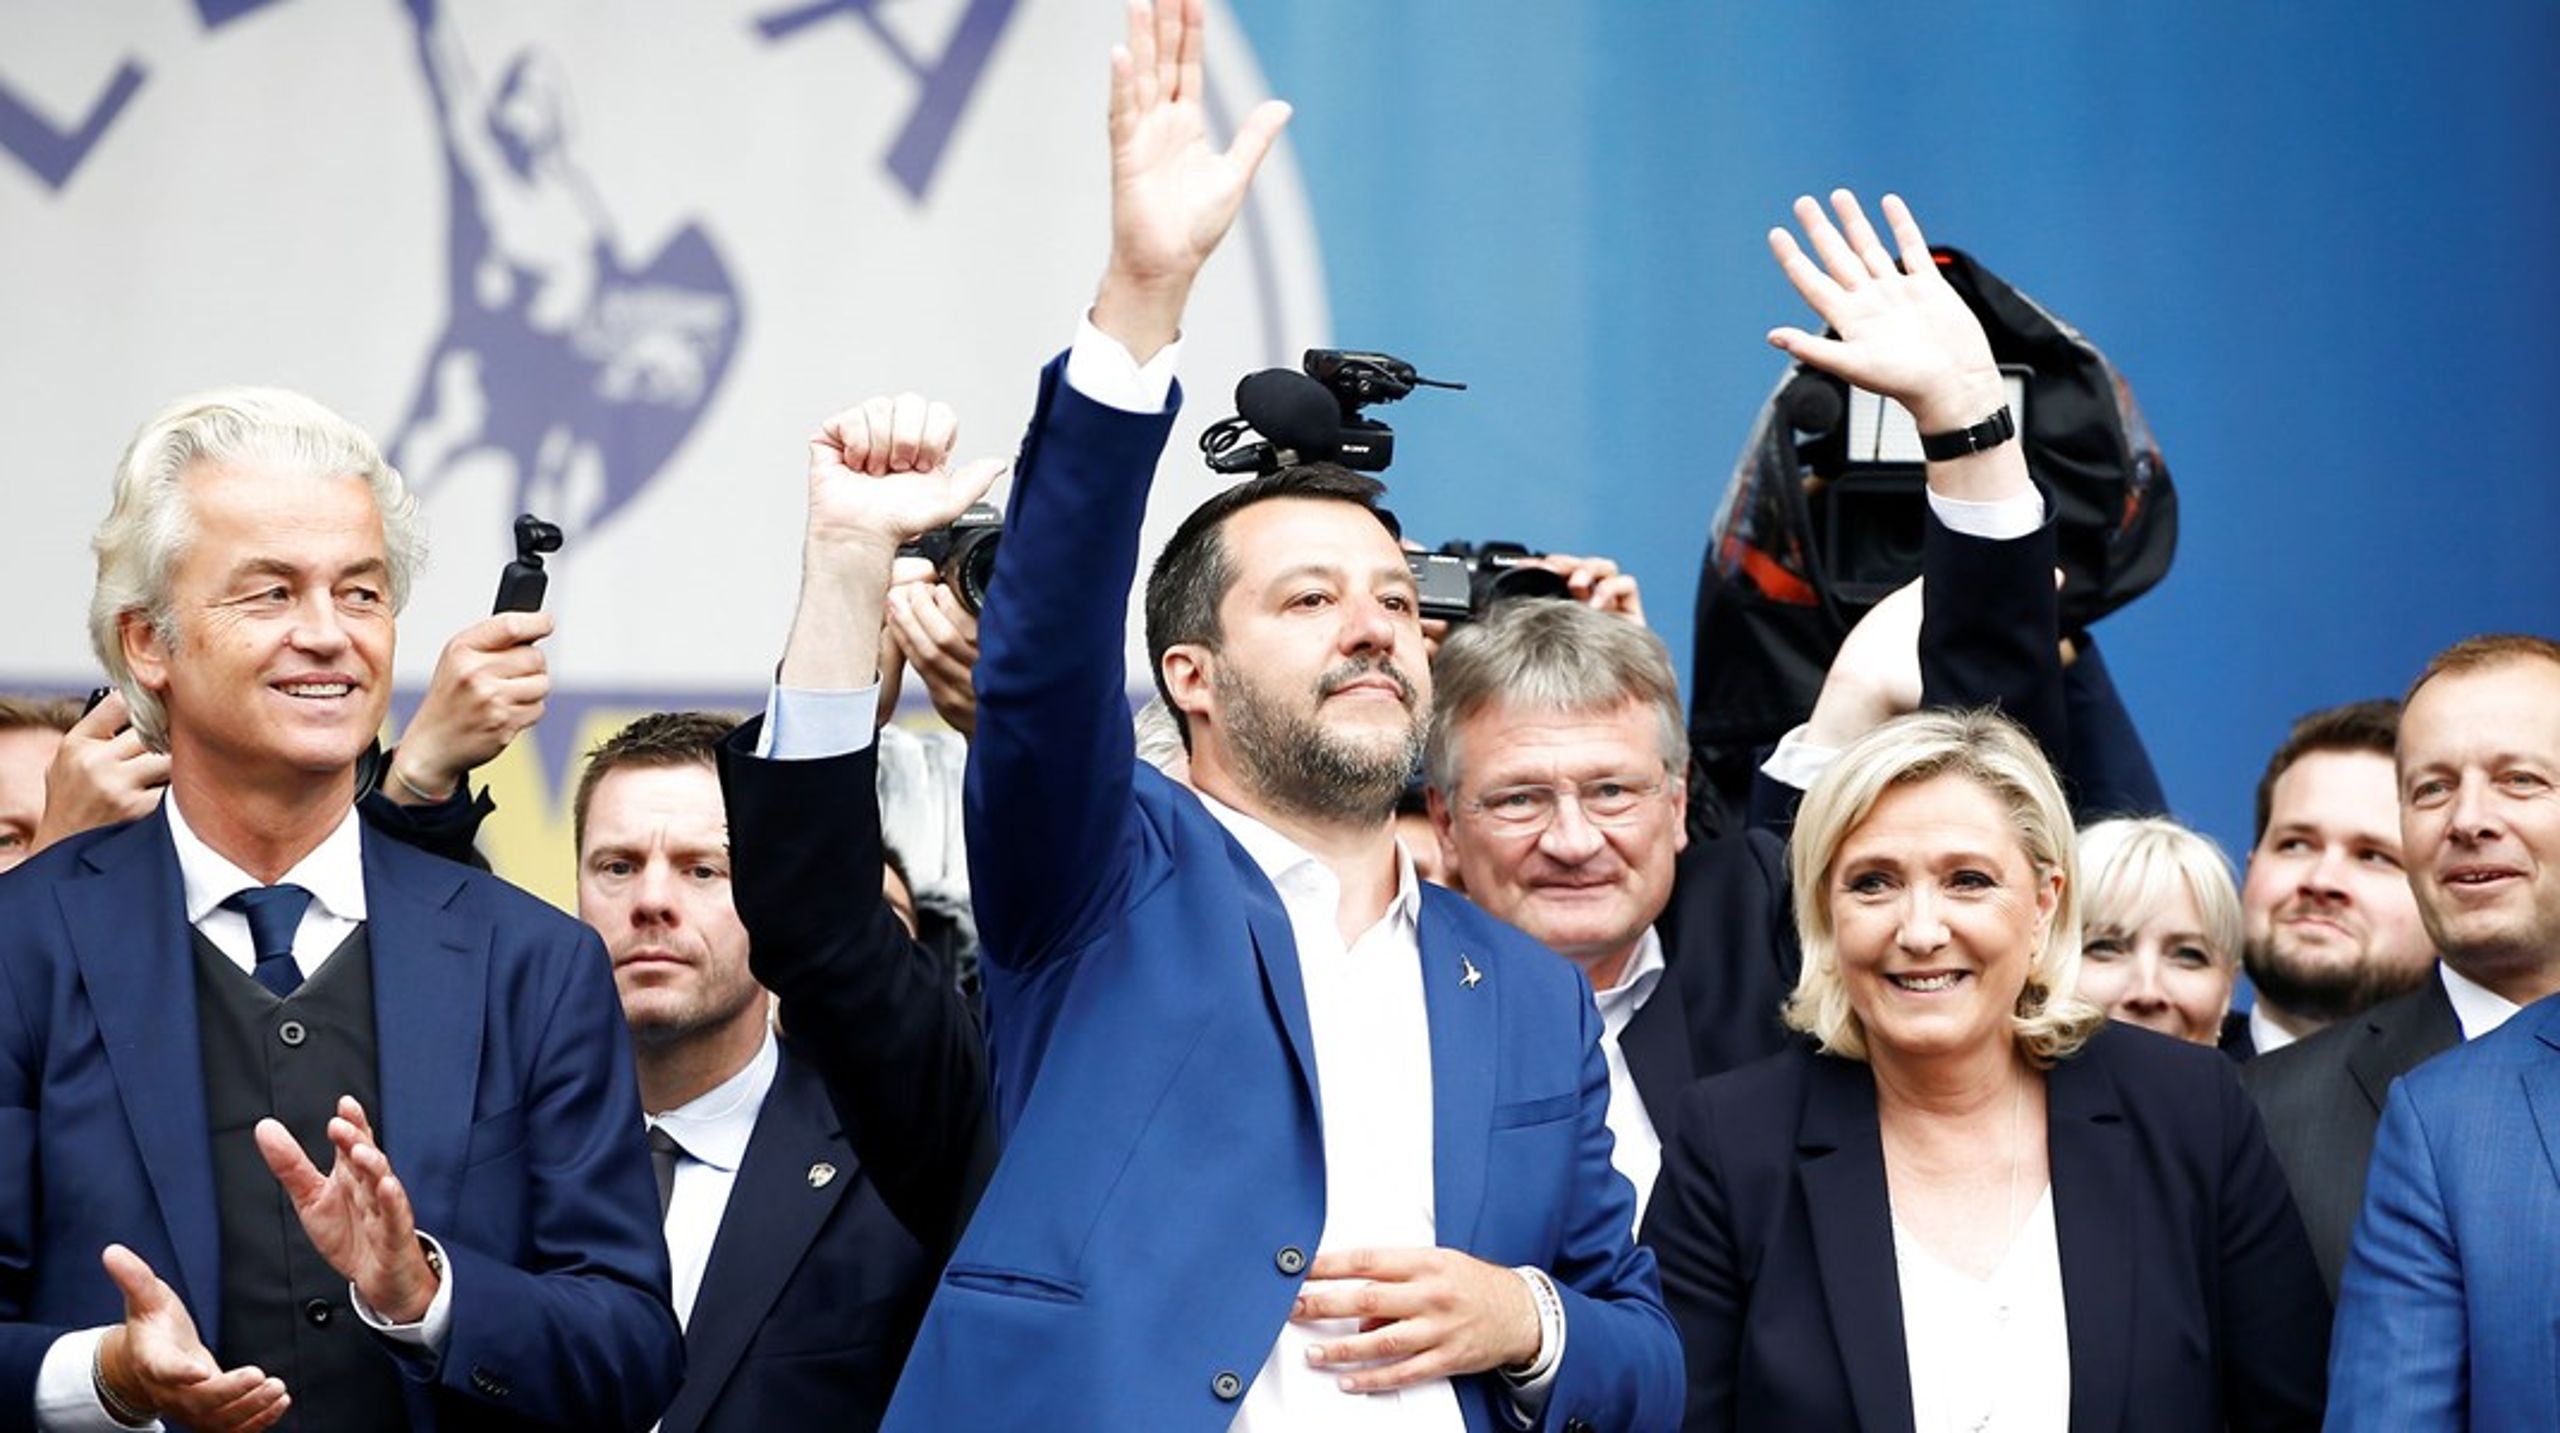 De problemer, der forårsagede Europas populistiske oprør, eksisterer stadig, selv om mange af dets ansigter ændrer sig snarere end helt at forsvinde, skriver&nbsp;Zsolt Enyedi. Her&nbsp;Geert Wilders, Matteo Salvini og Marine Le Pen i forgrunden.